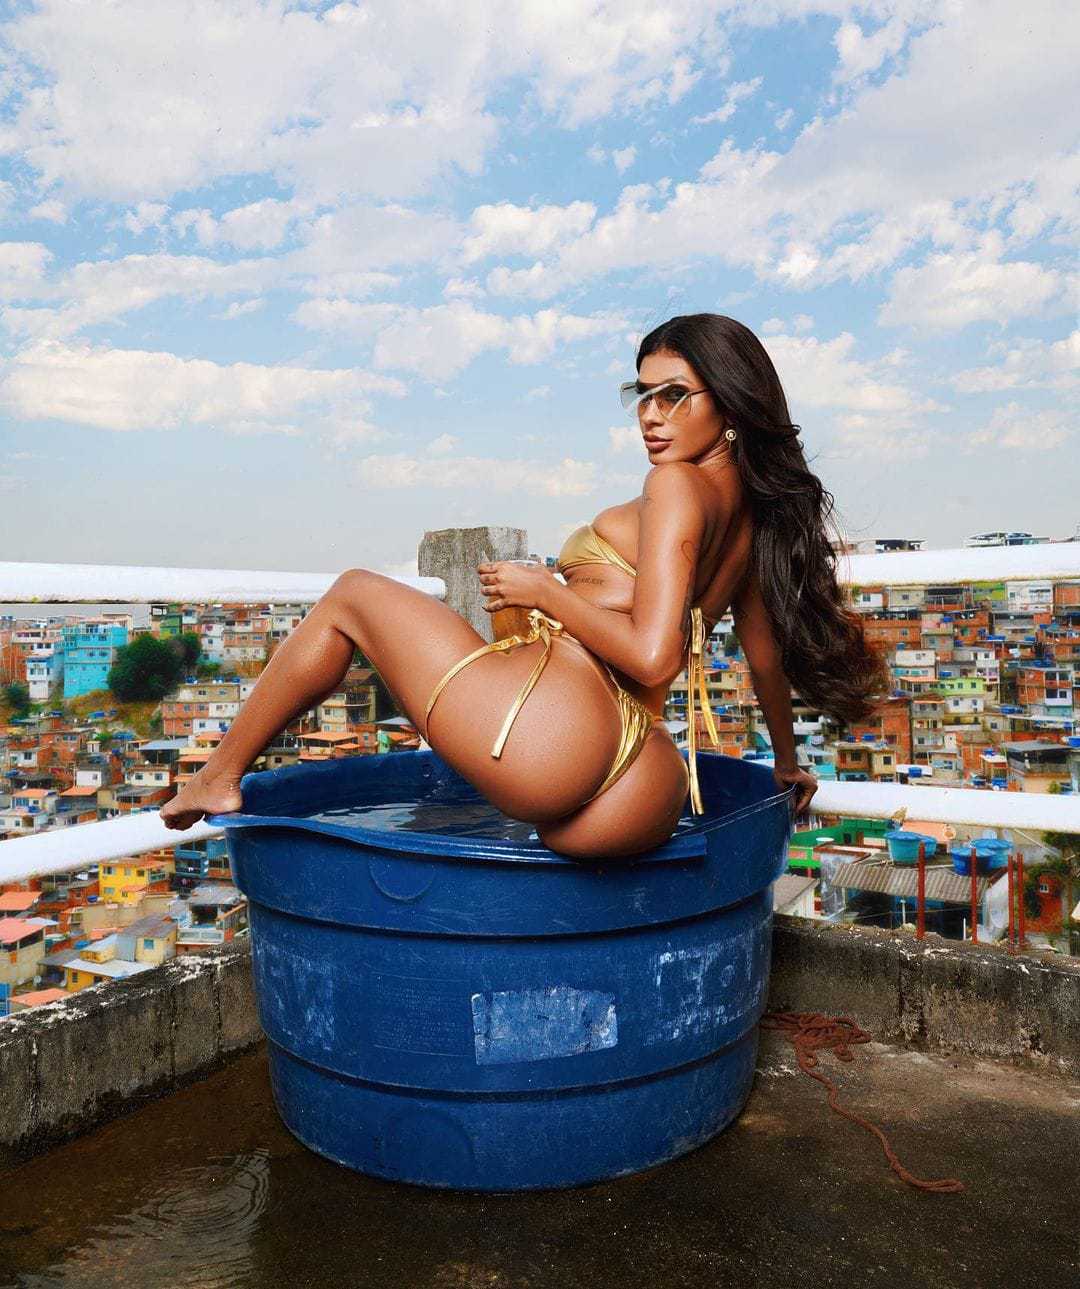 Pocah Escolhe O Vidigal, A Favela Da Paz, Como Cenário Para Seu Novo Clipe